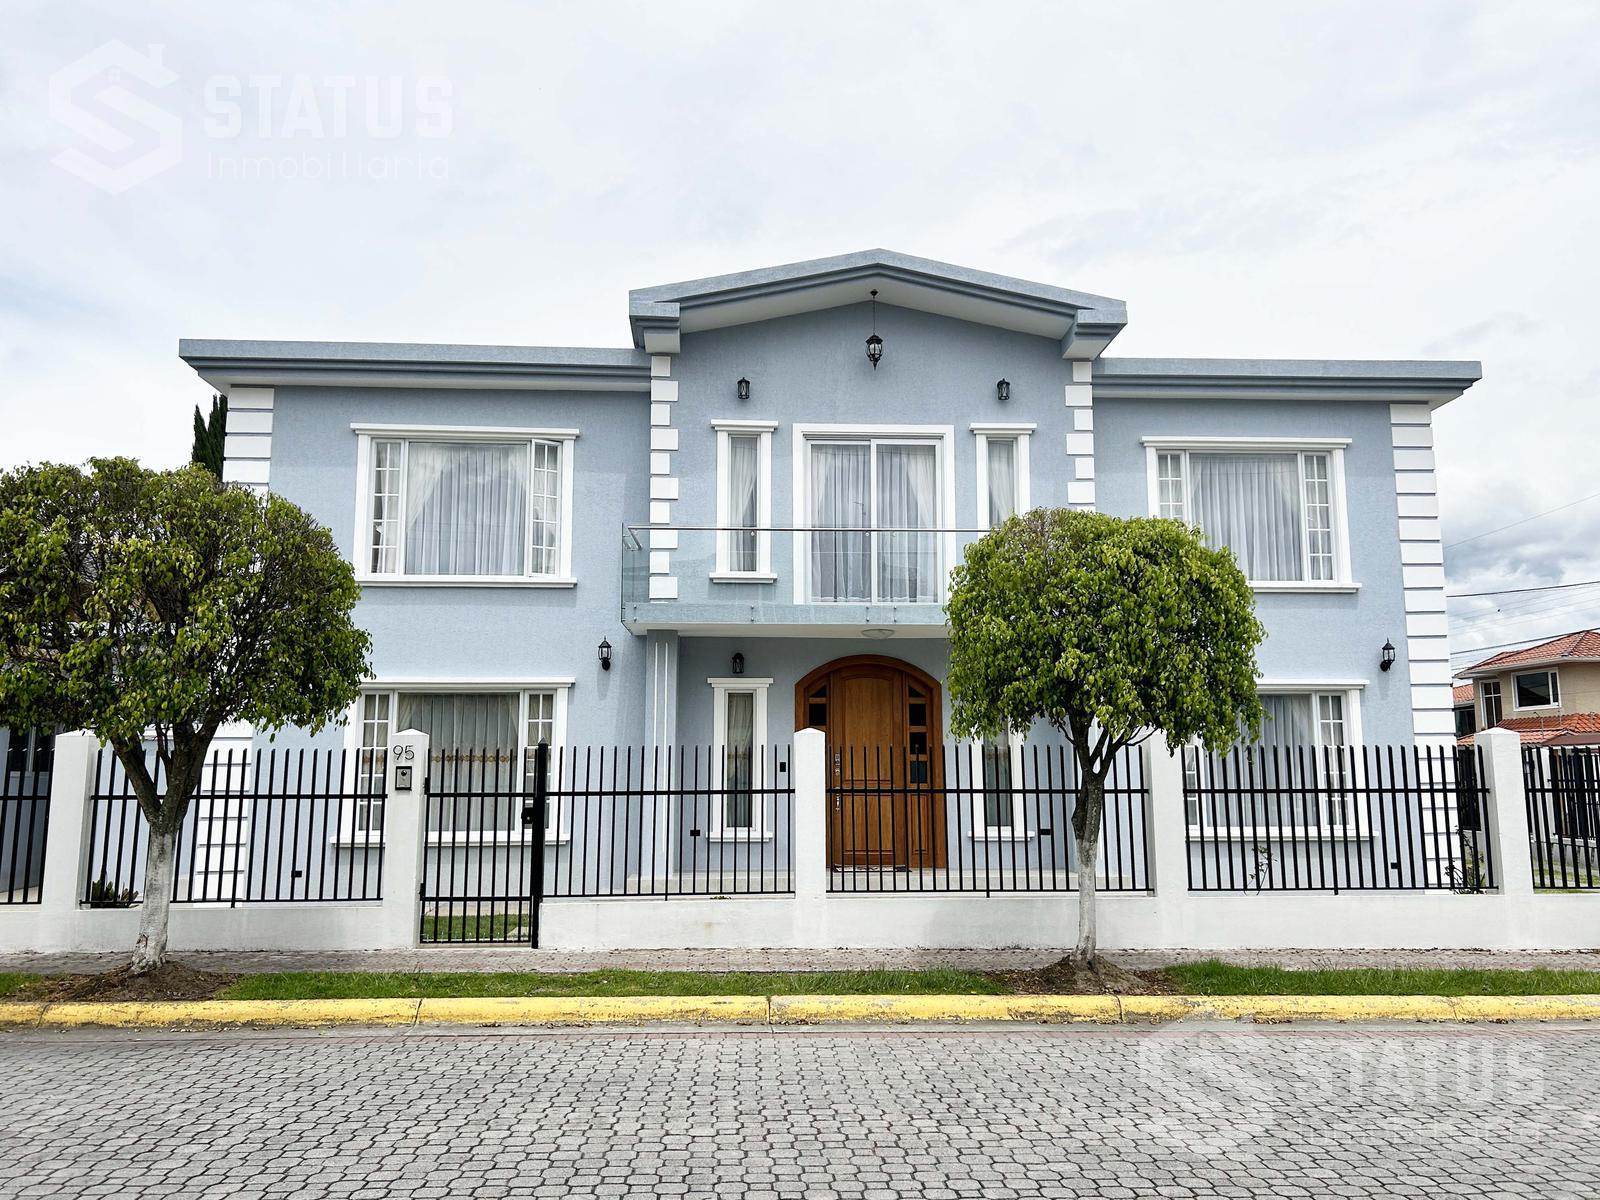 Vendo casa en Urb. Las Haciendas, 4 Dorm, 2 Garajes, Fajardo – Sangolquí, 285 m, $244.900